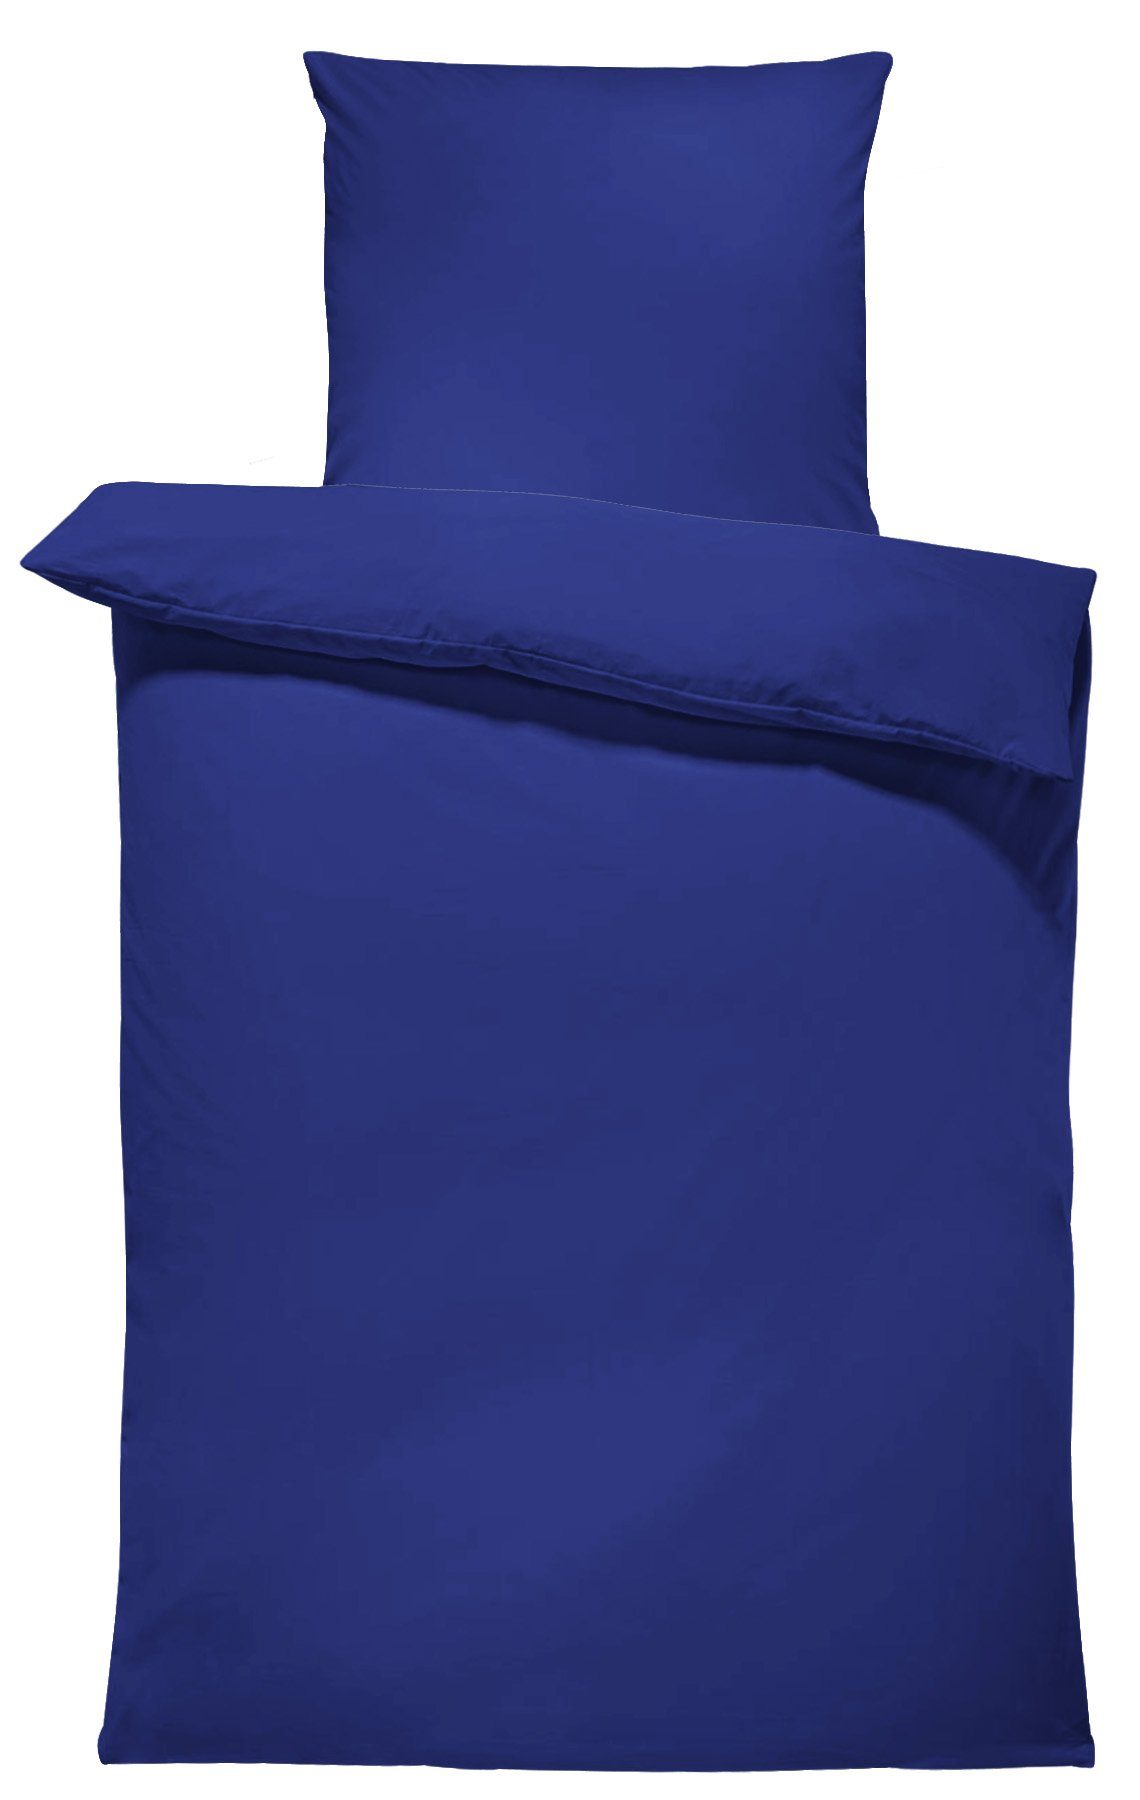 Bettwäsche Unifarben Einfarbig, One Home, Renforcé, 2 teilig, Baumwolle mit Reißverschluss, Normalgröße dunkelblau